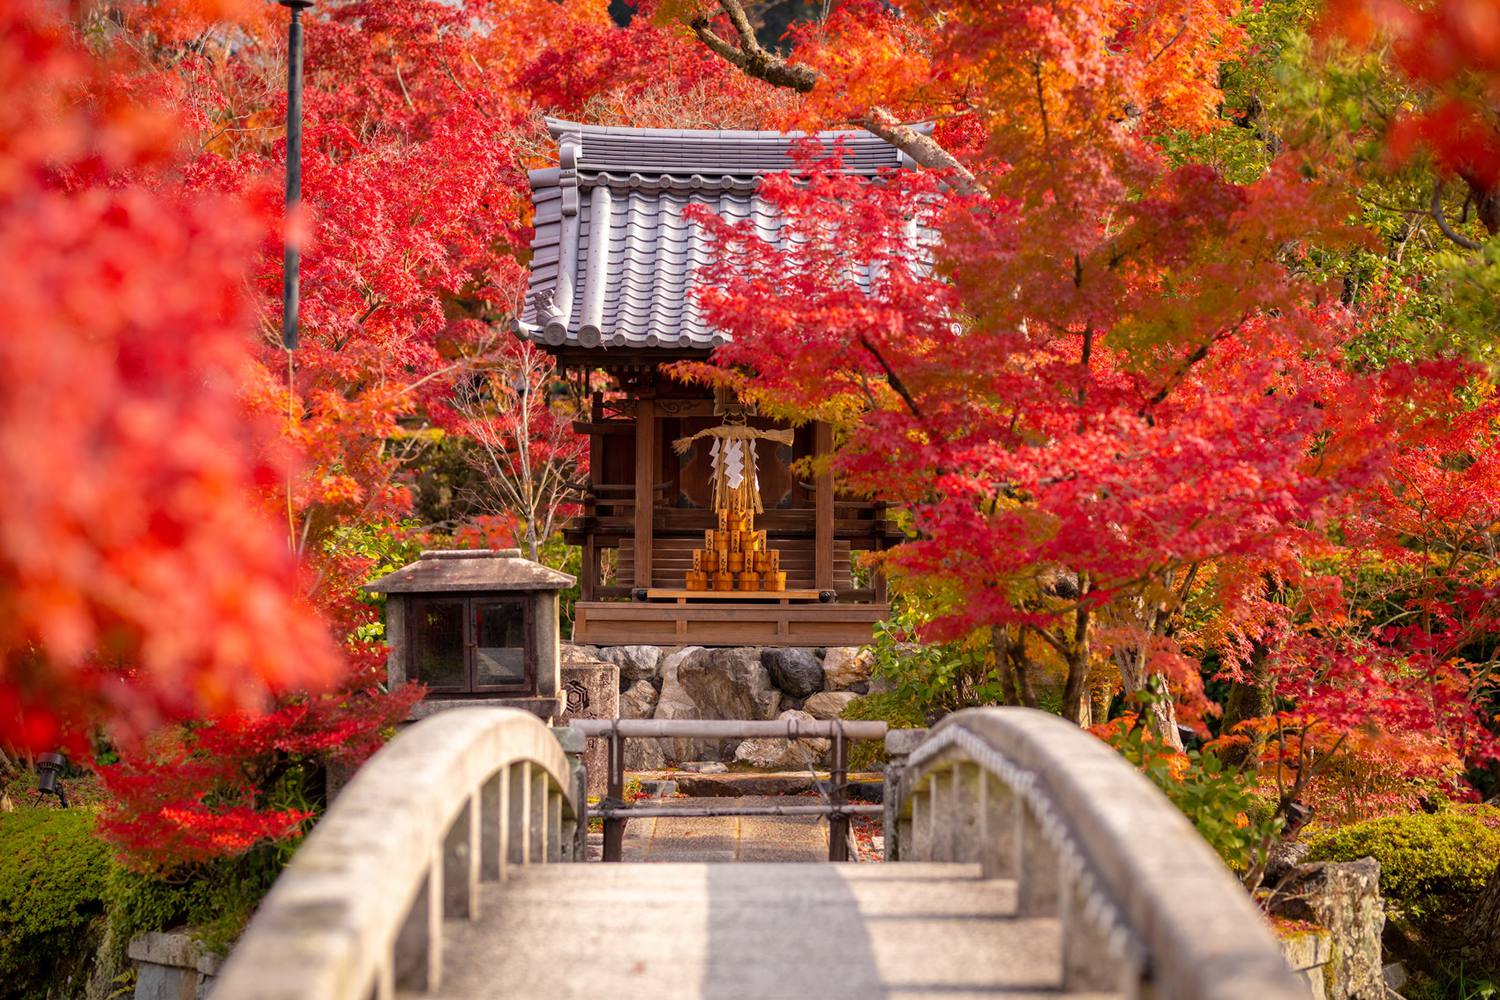 11月の京都は紅葉が見頃 おすすめ紅葉スポットから秋の味覚まで徹底解説 海外旅行 日本国内旅行のおすすめ情報 Veltra Zine ベルトラ